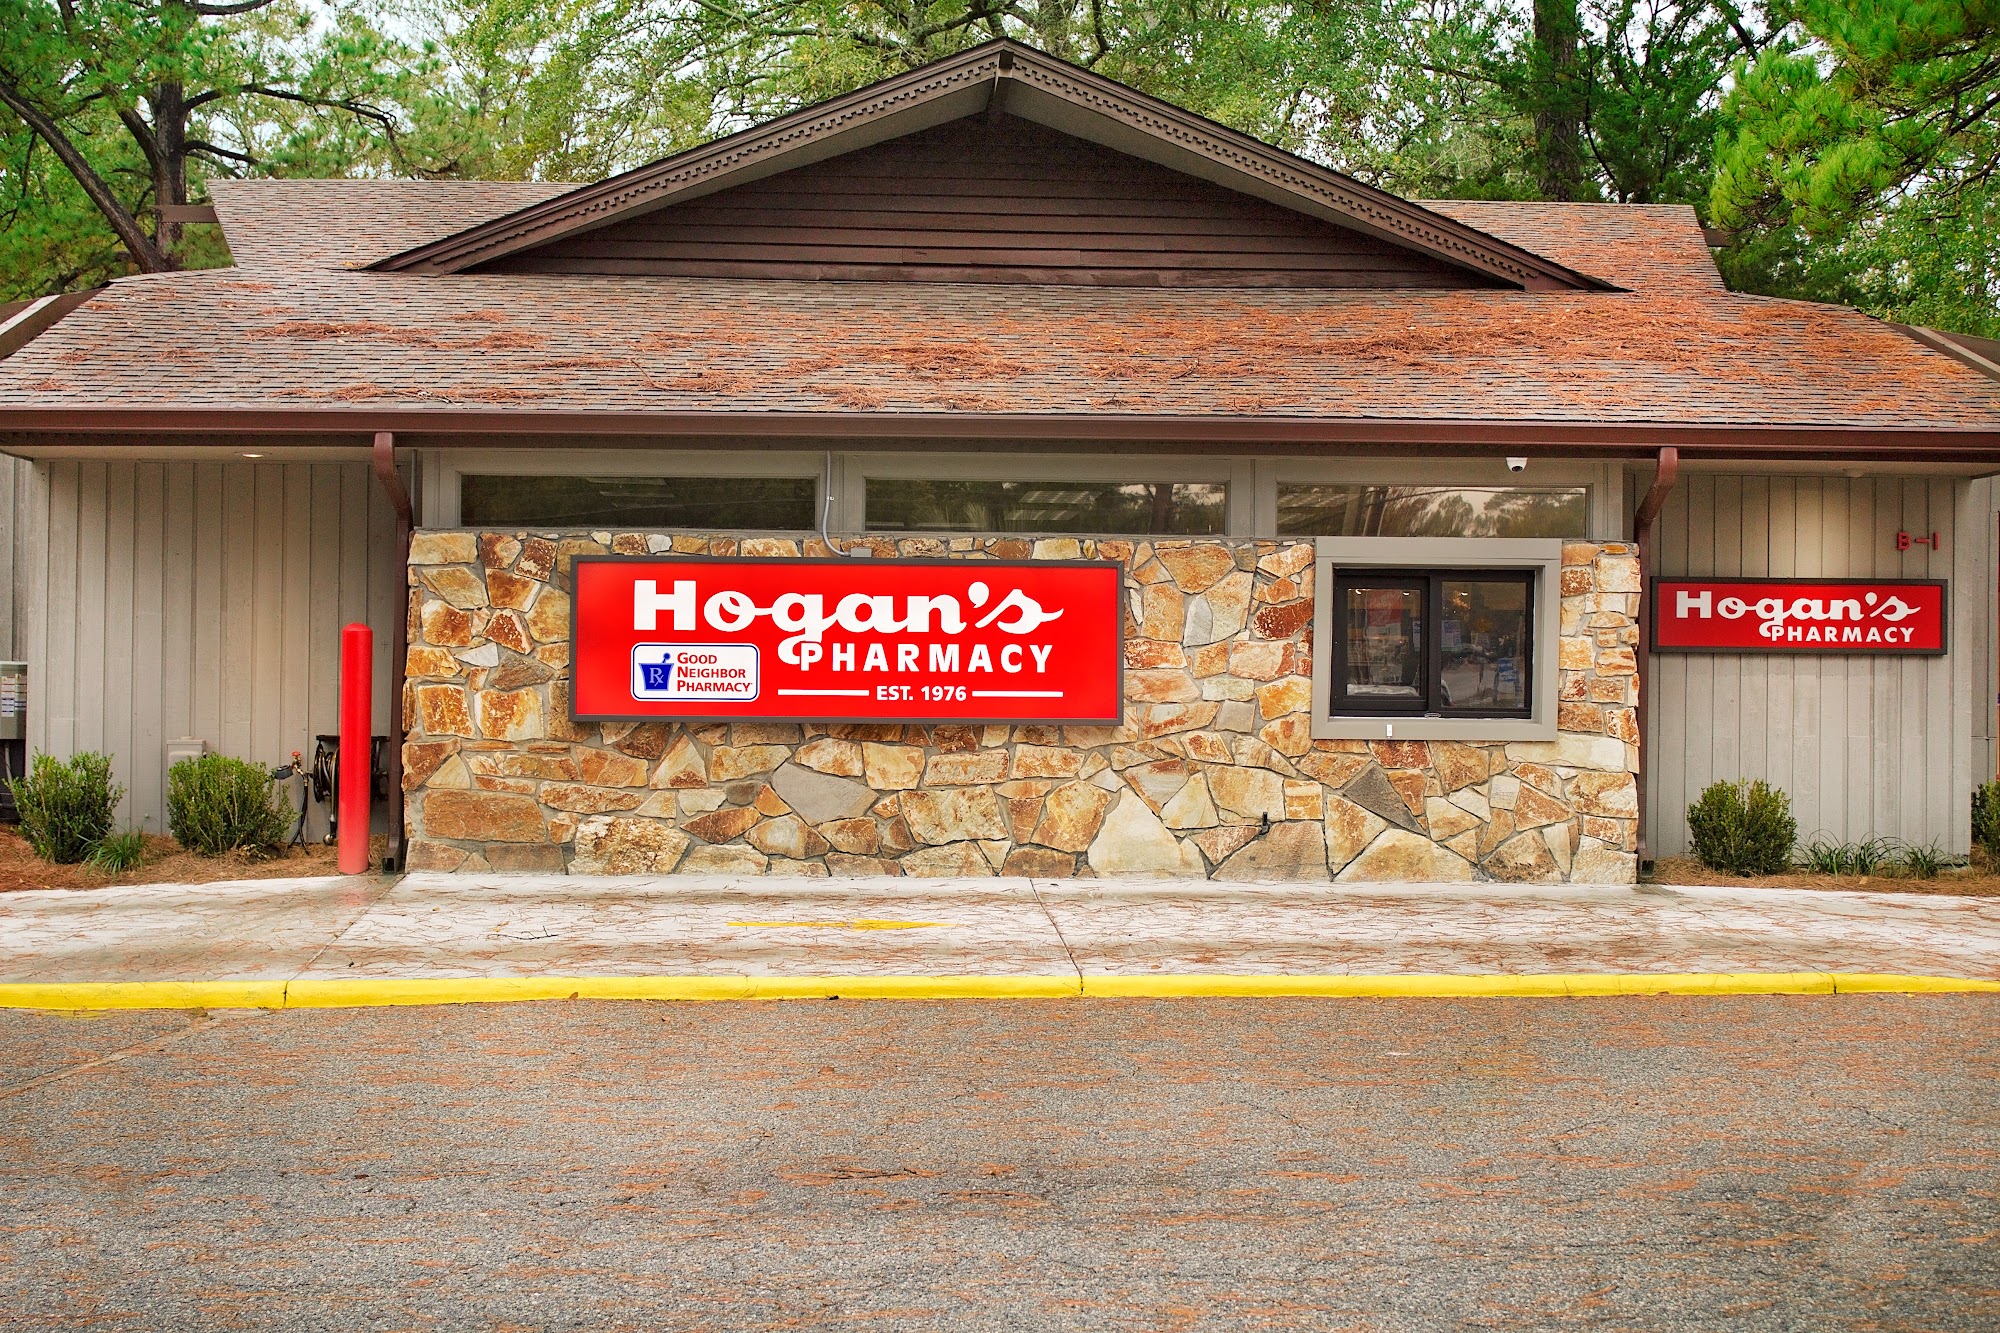 Hogan's Pharmacy